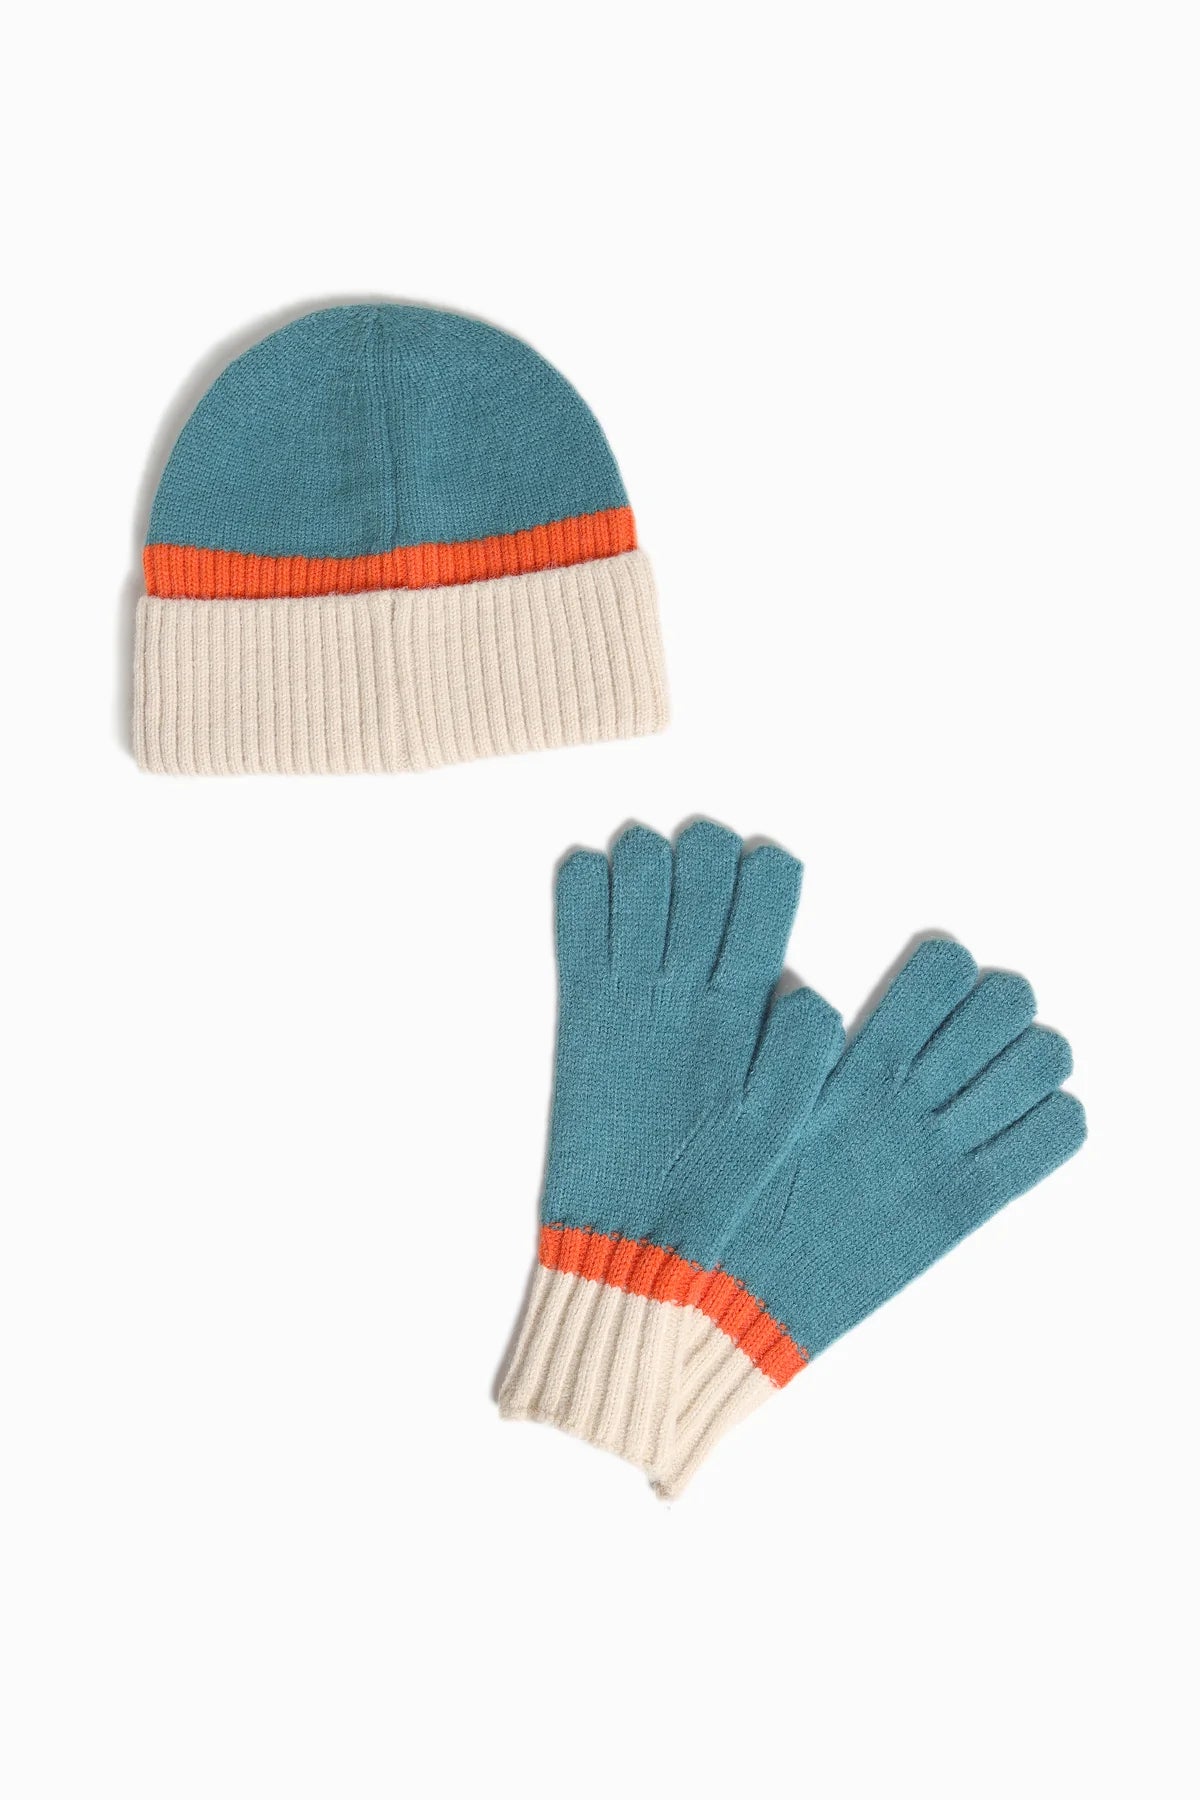 Tri-Color Gloves | Teal